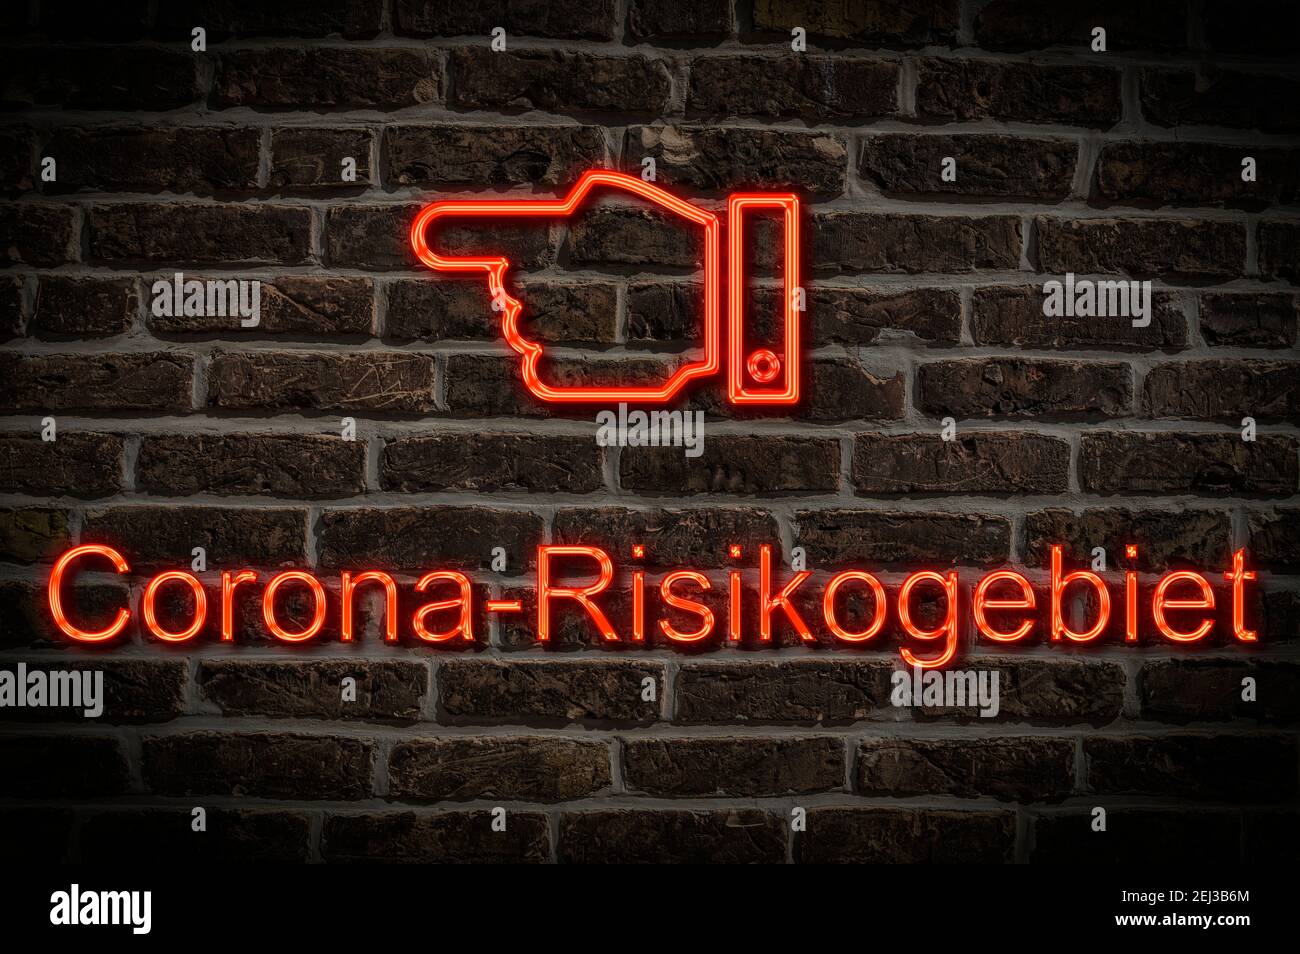 Detailansicht einer Leuchtreklame an einer Mauer mit der Aufschrift Corona-Risikogebiet Foto Stock